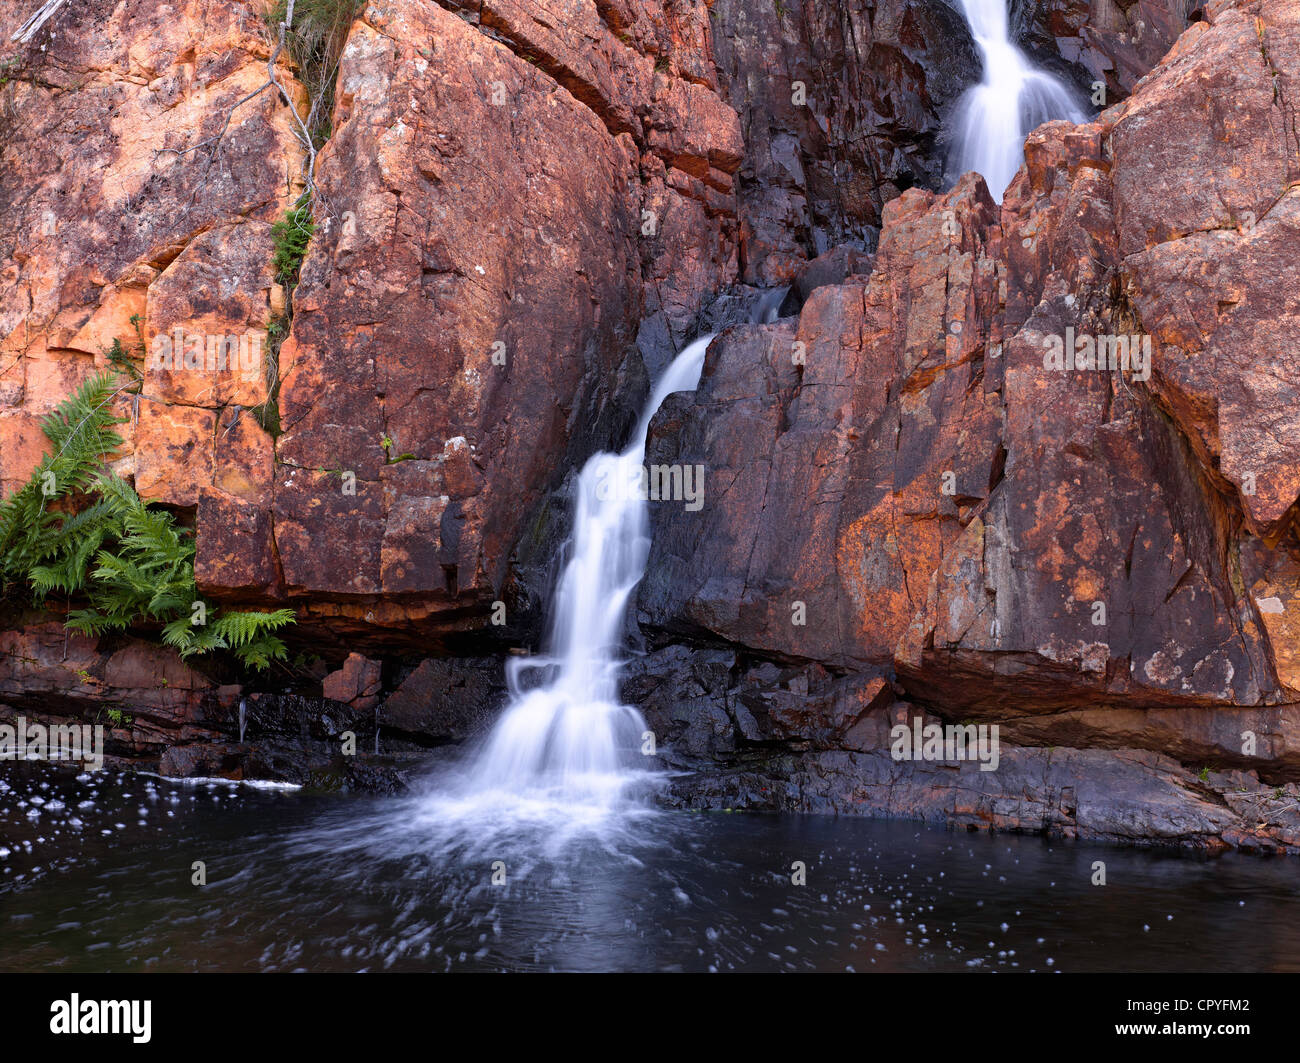 Blurred motion d'eau sur les rochers, dans les Grampians Victoria, Australie Banque D'Images